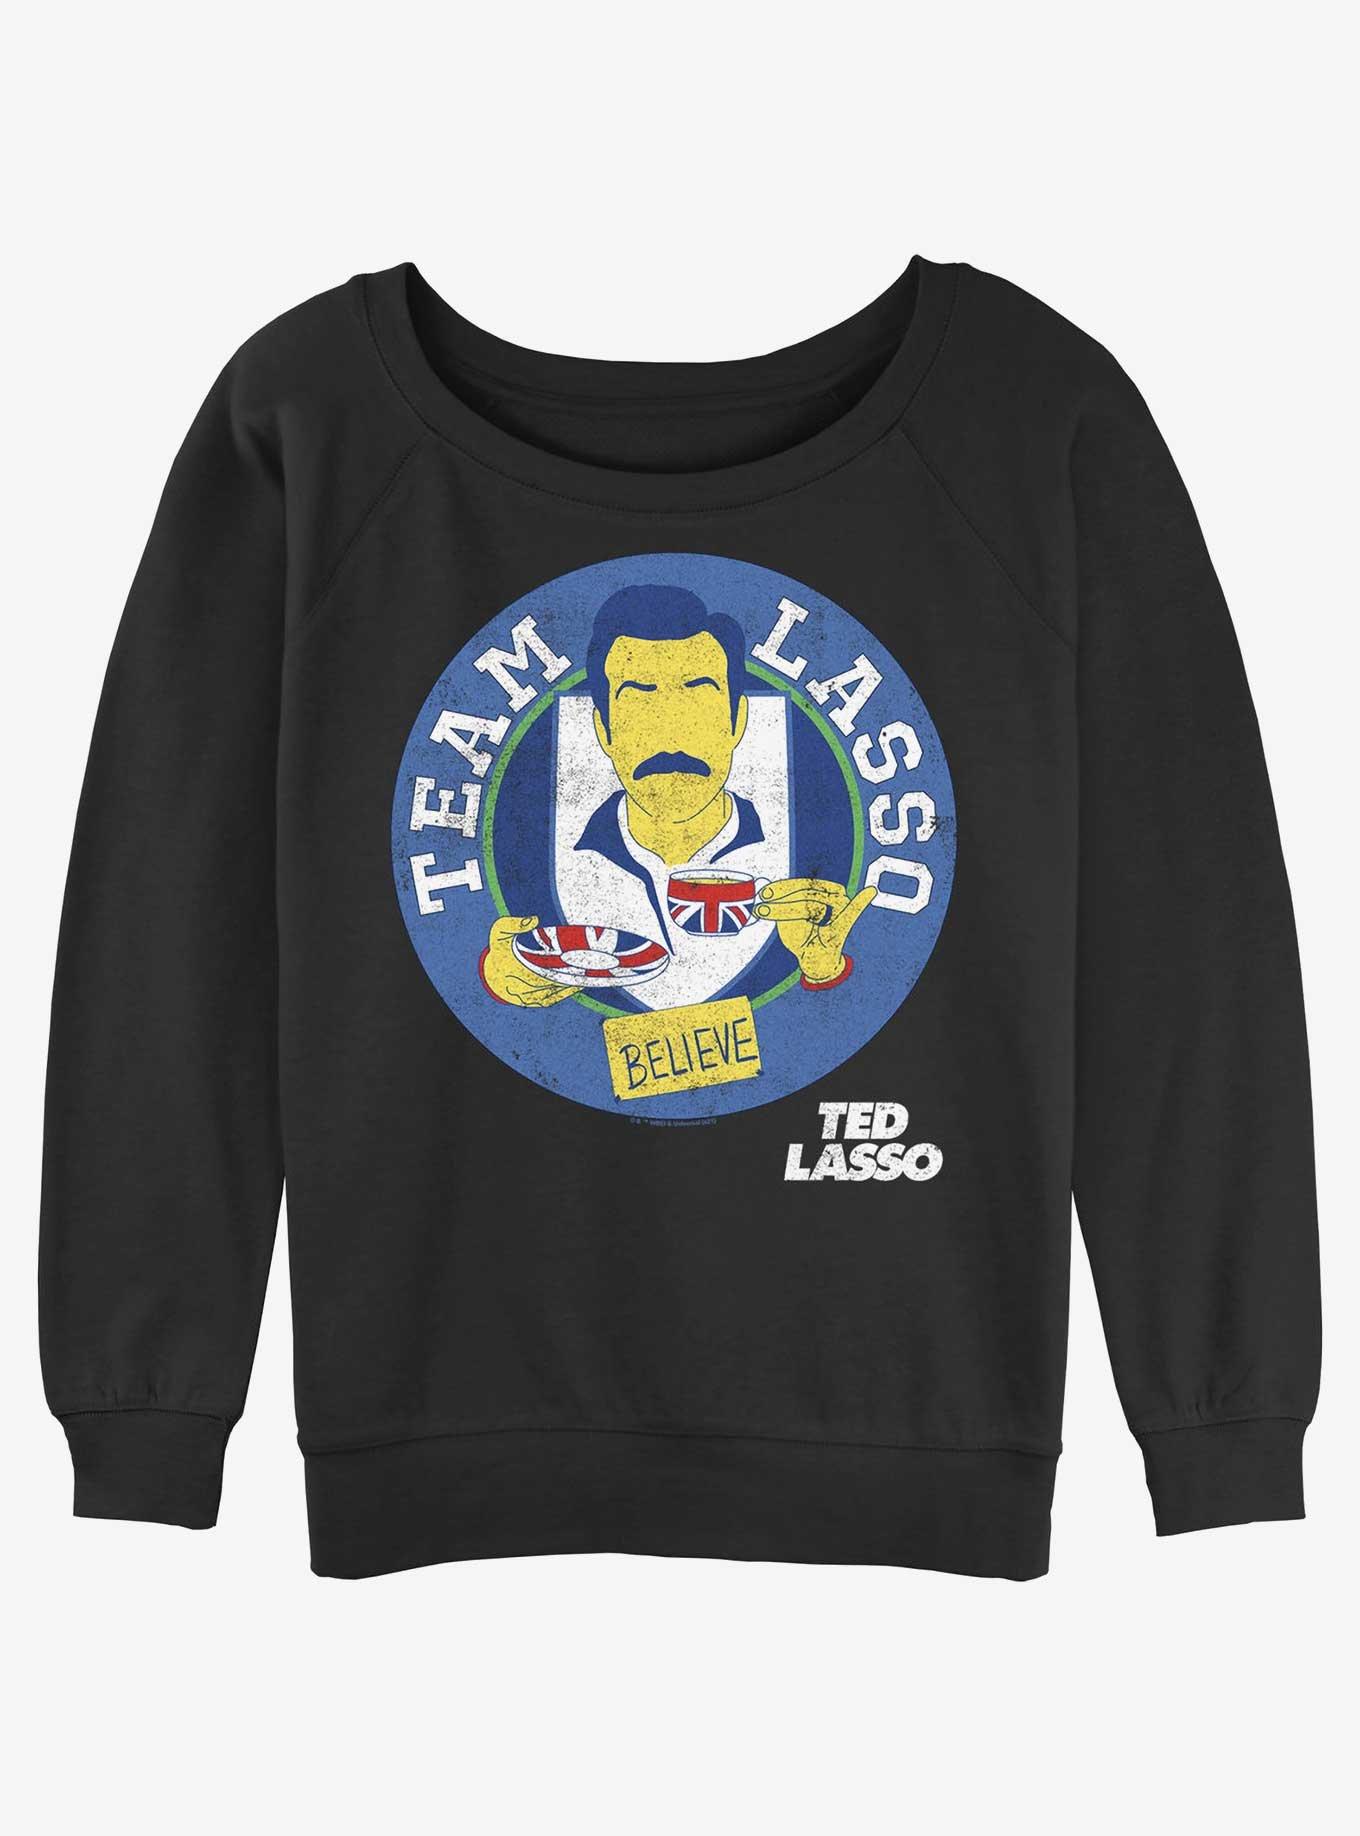 Ted Lasso Team Believe Girls Slouchy Sweatshirt, BLACK, hi-res